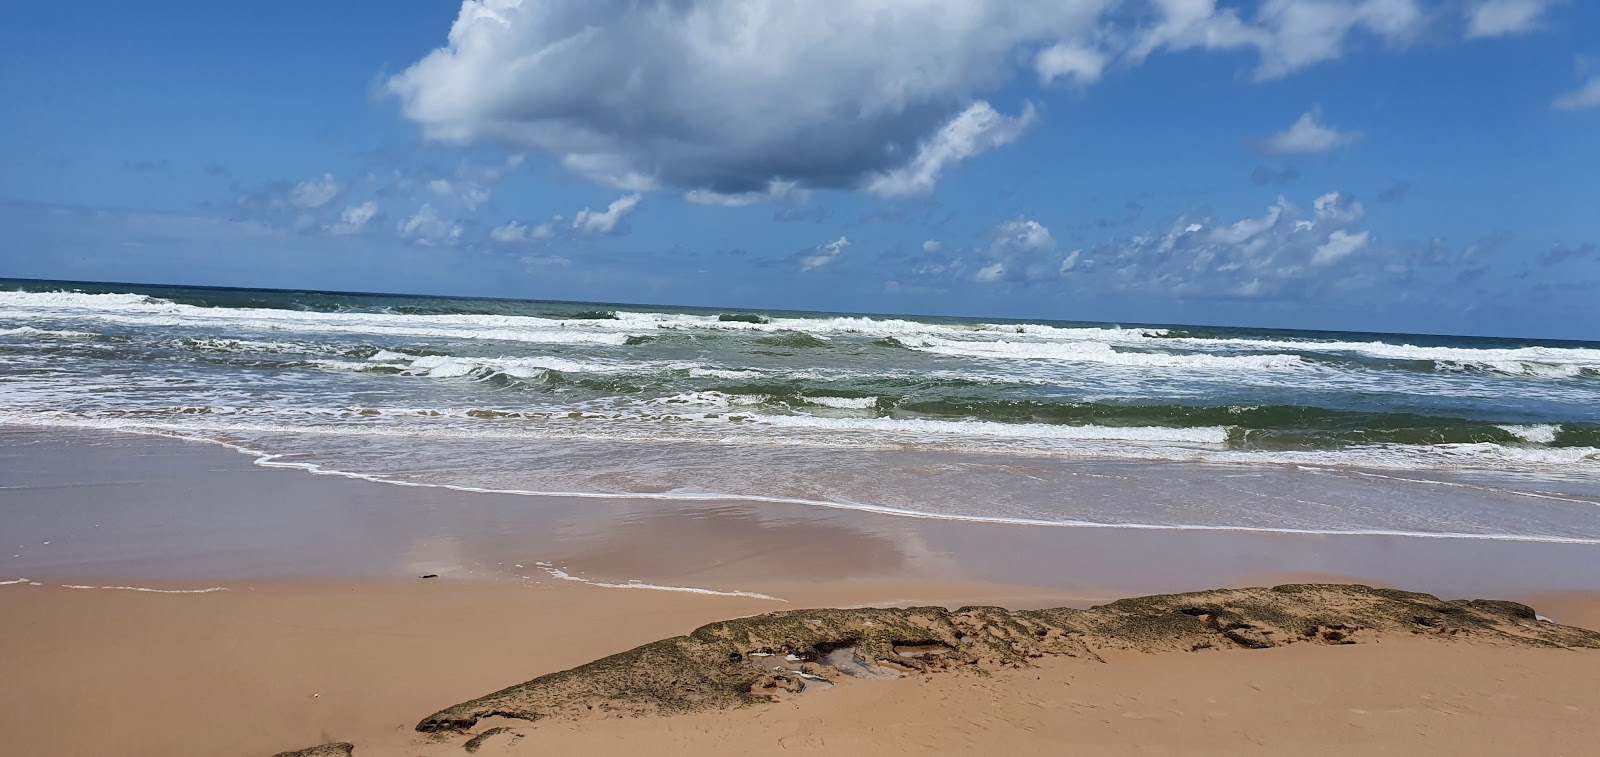 Praia do Conde'in fotoğrafı çok temiz temizlik seviyesi ile